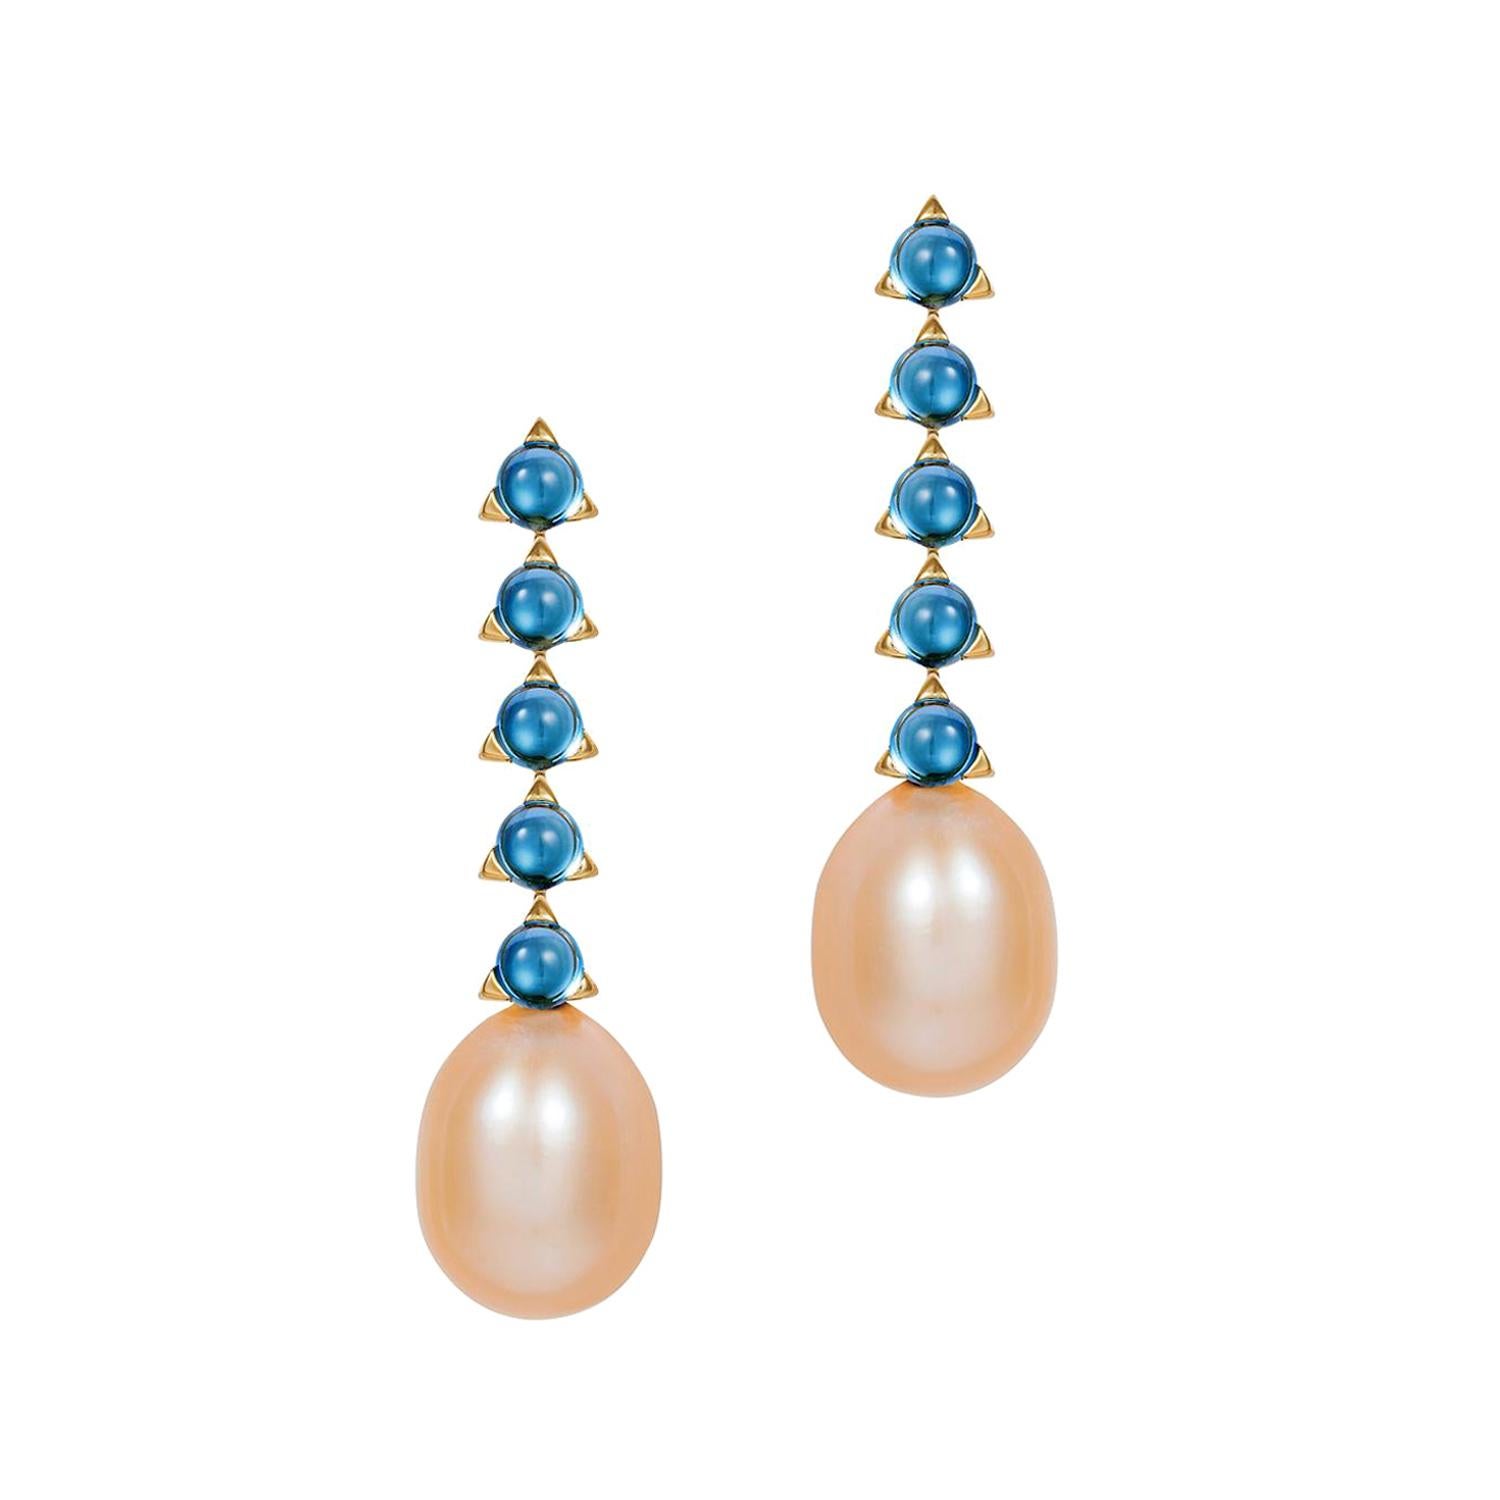 Modern minimalist 4mm 5 Stone Baroque Pearl Earrings London Blue Top 18 K Gold